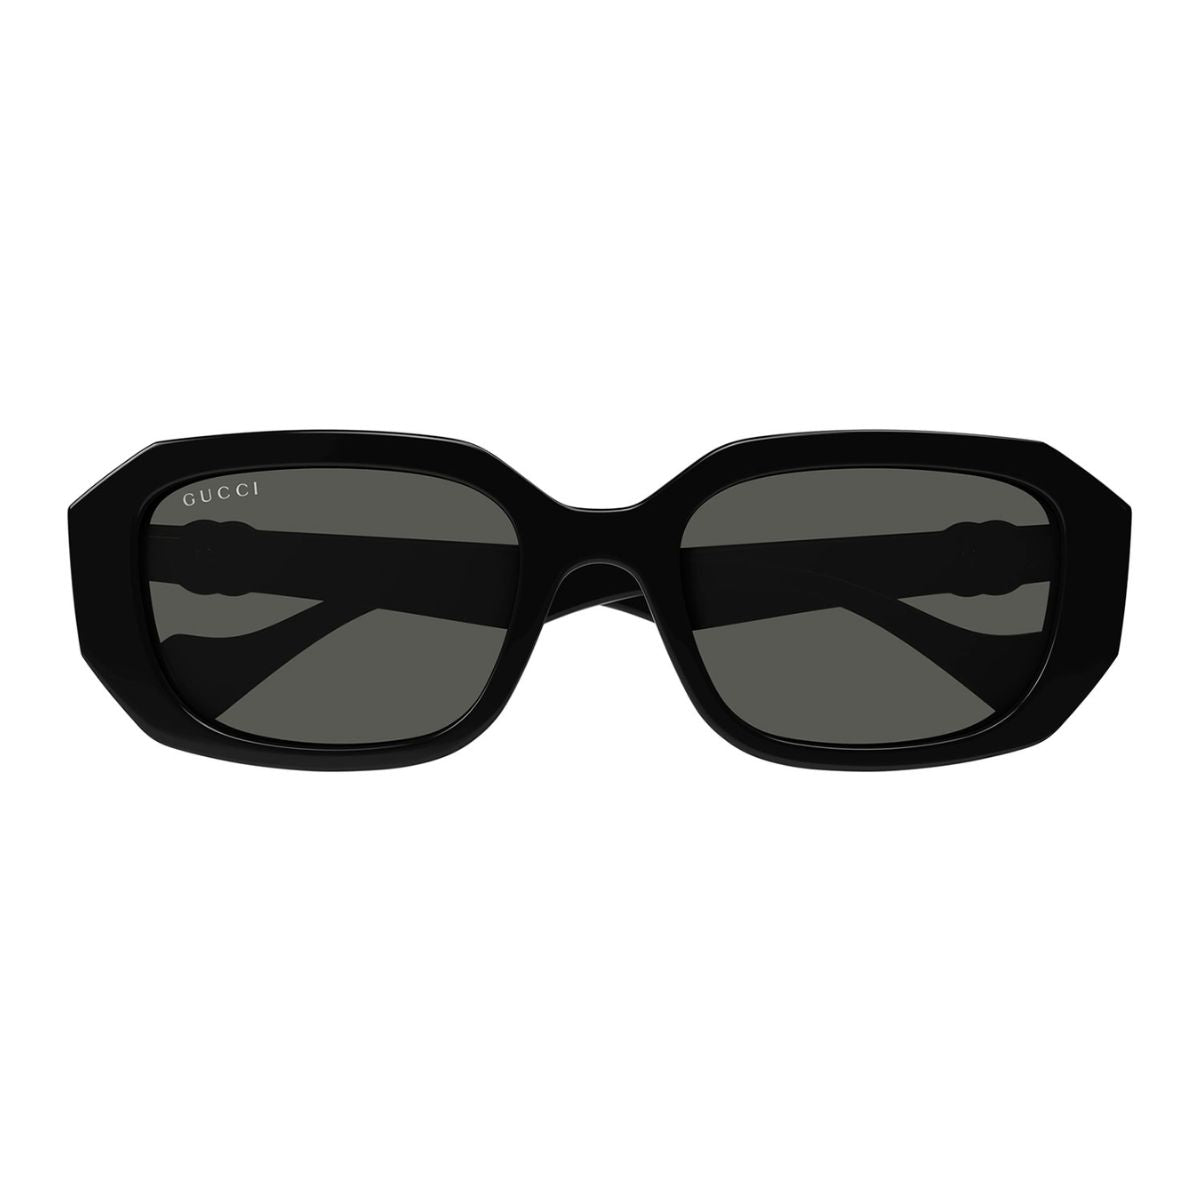 "Gucci GG1535S 001 Sunglasses - Women's Fashion"